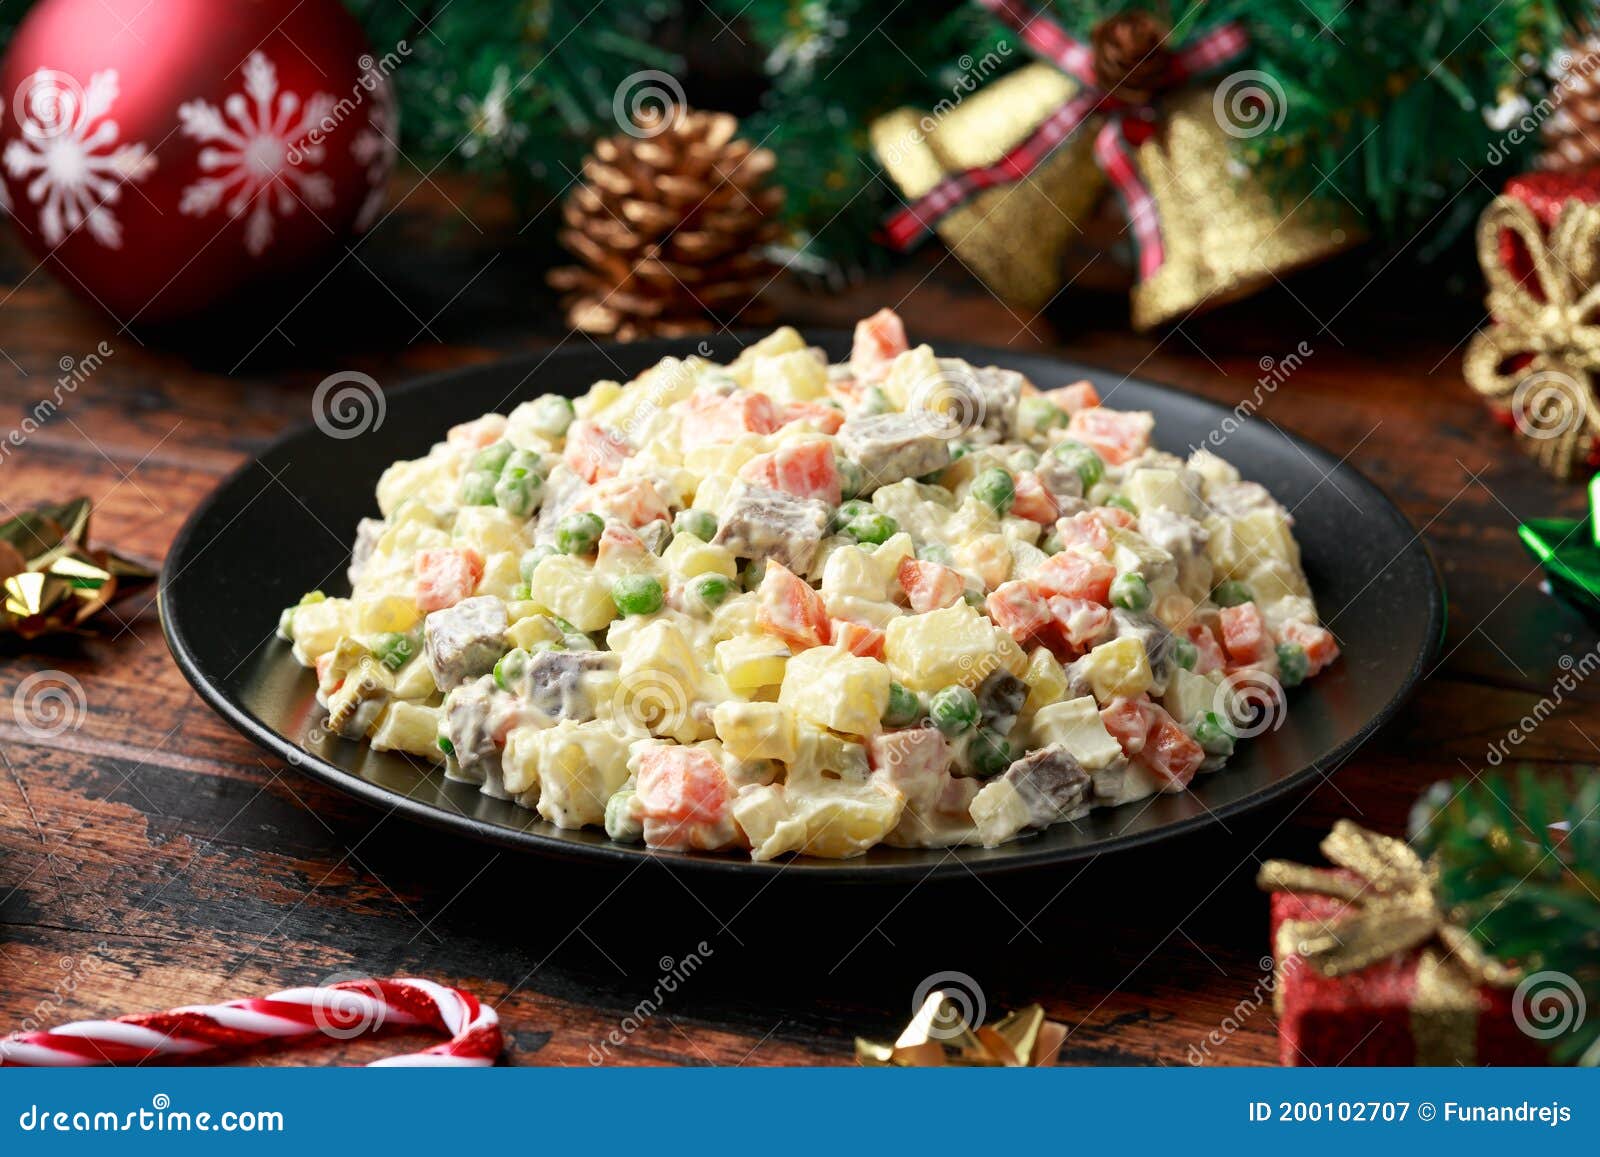 Что приготовить на Сочельник и Рождество: какие 12 блюд русской кухни стоит поставить на стол